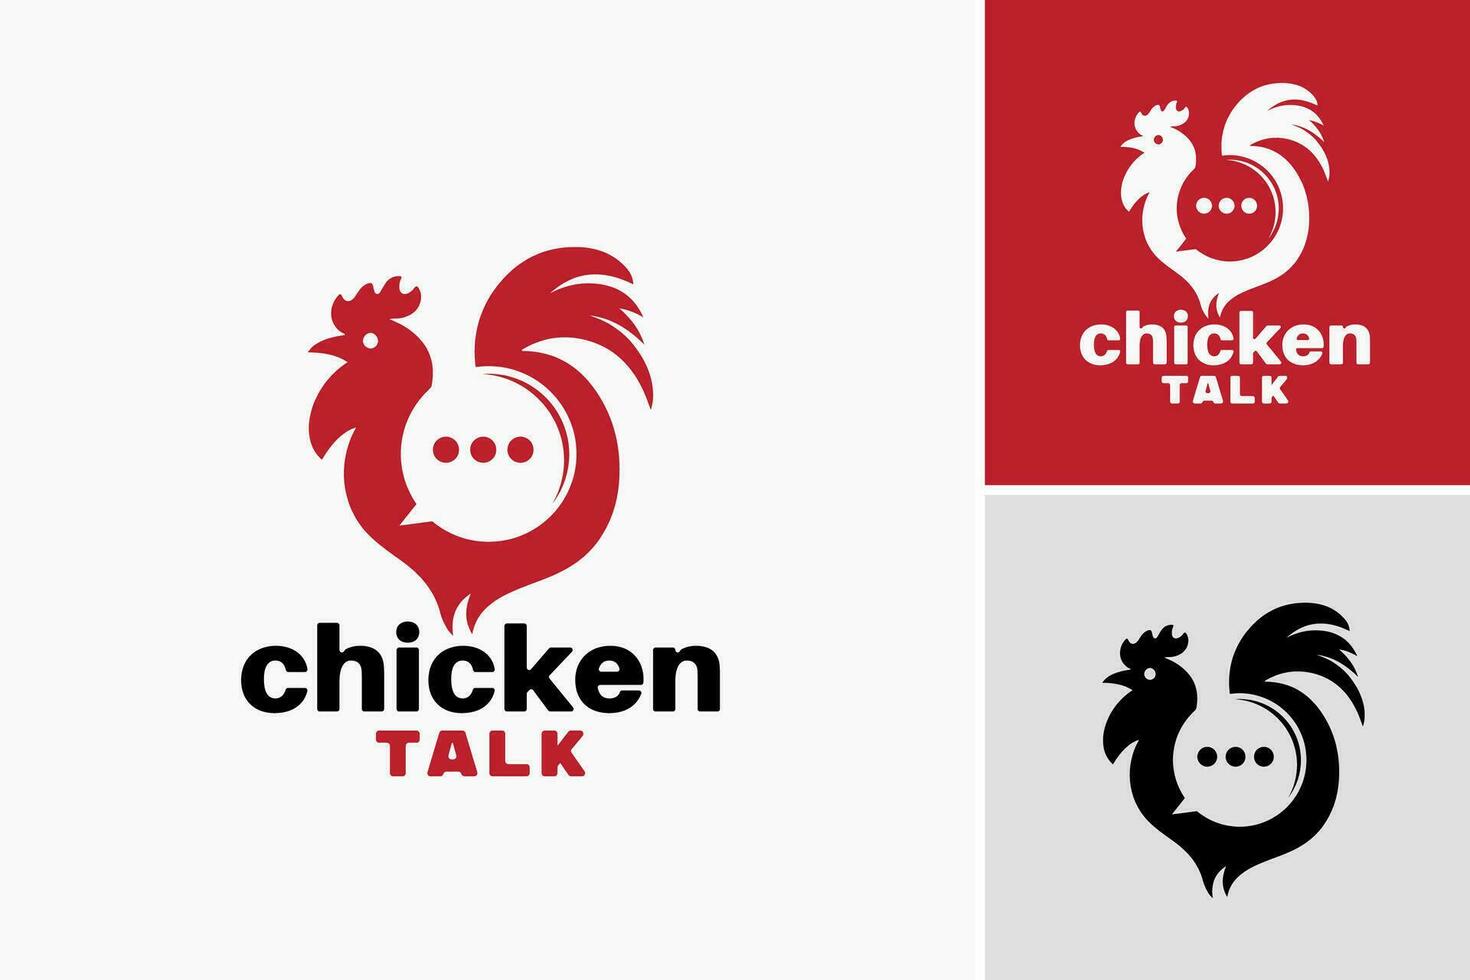 pollo hablar logo es un diseño activo adecuado para un aves de corral granja o relacionado con el pollo negocio. eso lata ser usado como un logo a representar el marca identidad y comunicar el esencia de el negocio. vector